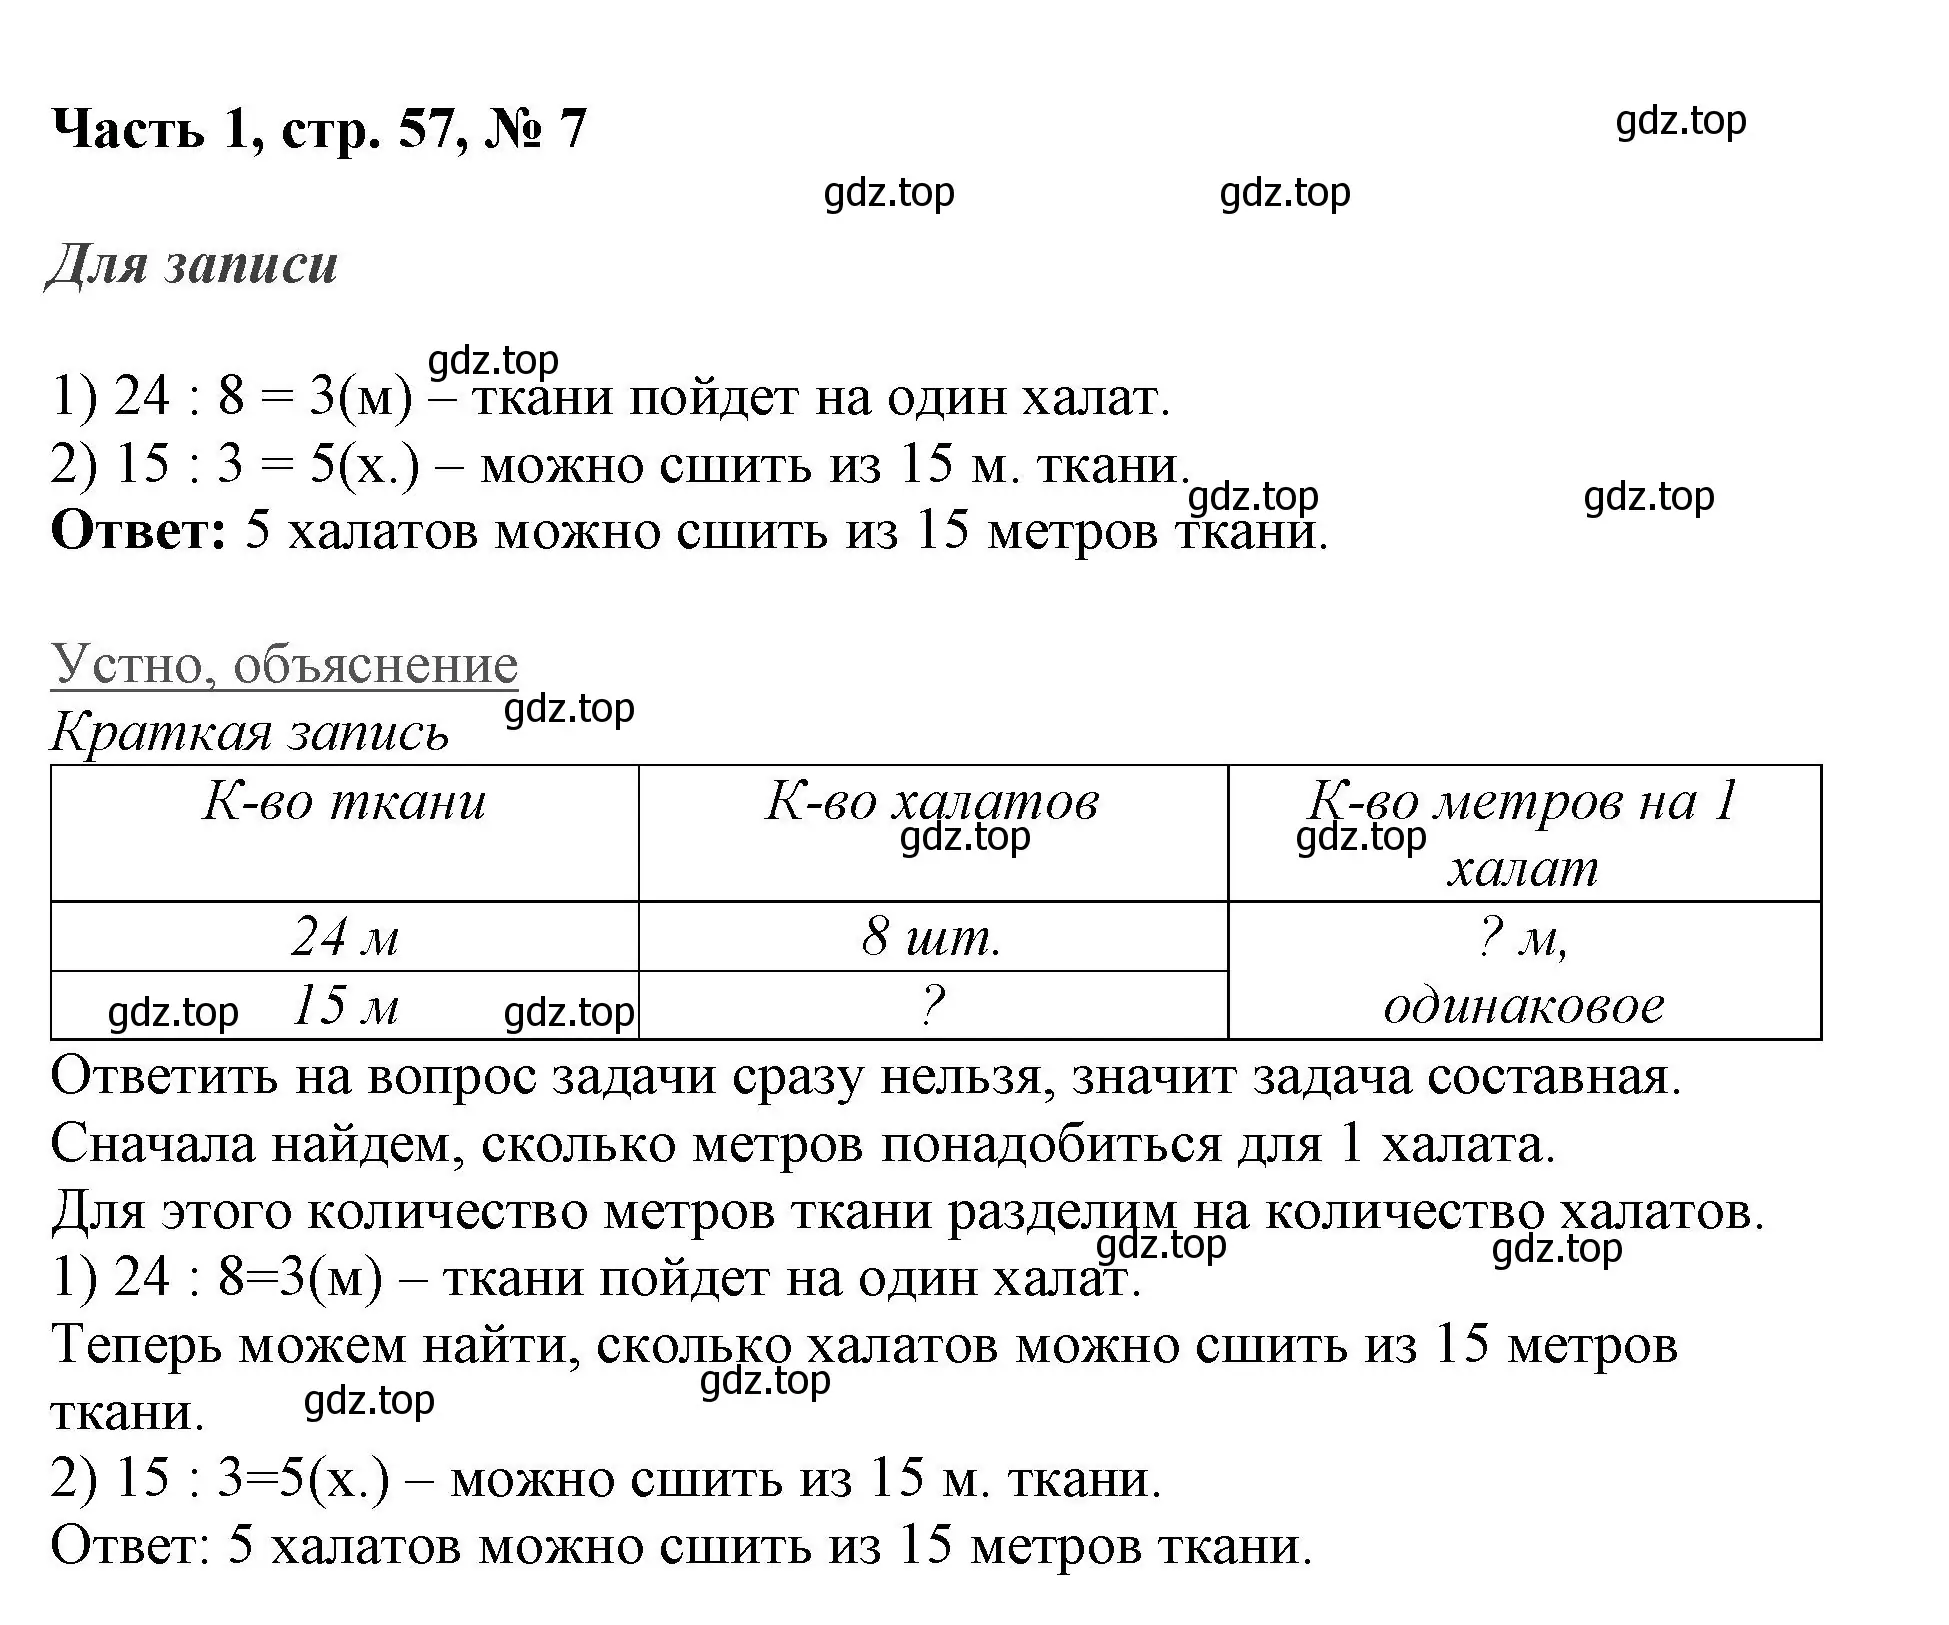 Решение номер 7 (страница 57) гдз по математике 3 класс Моро, Бантова, учебник 1 часть